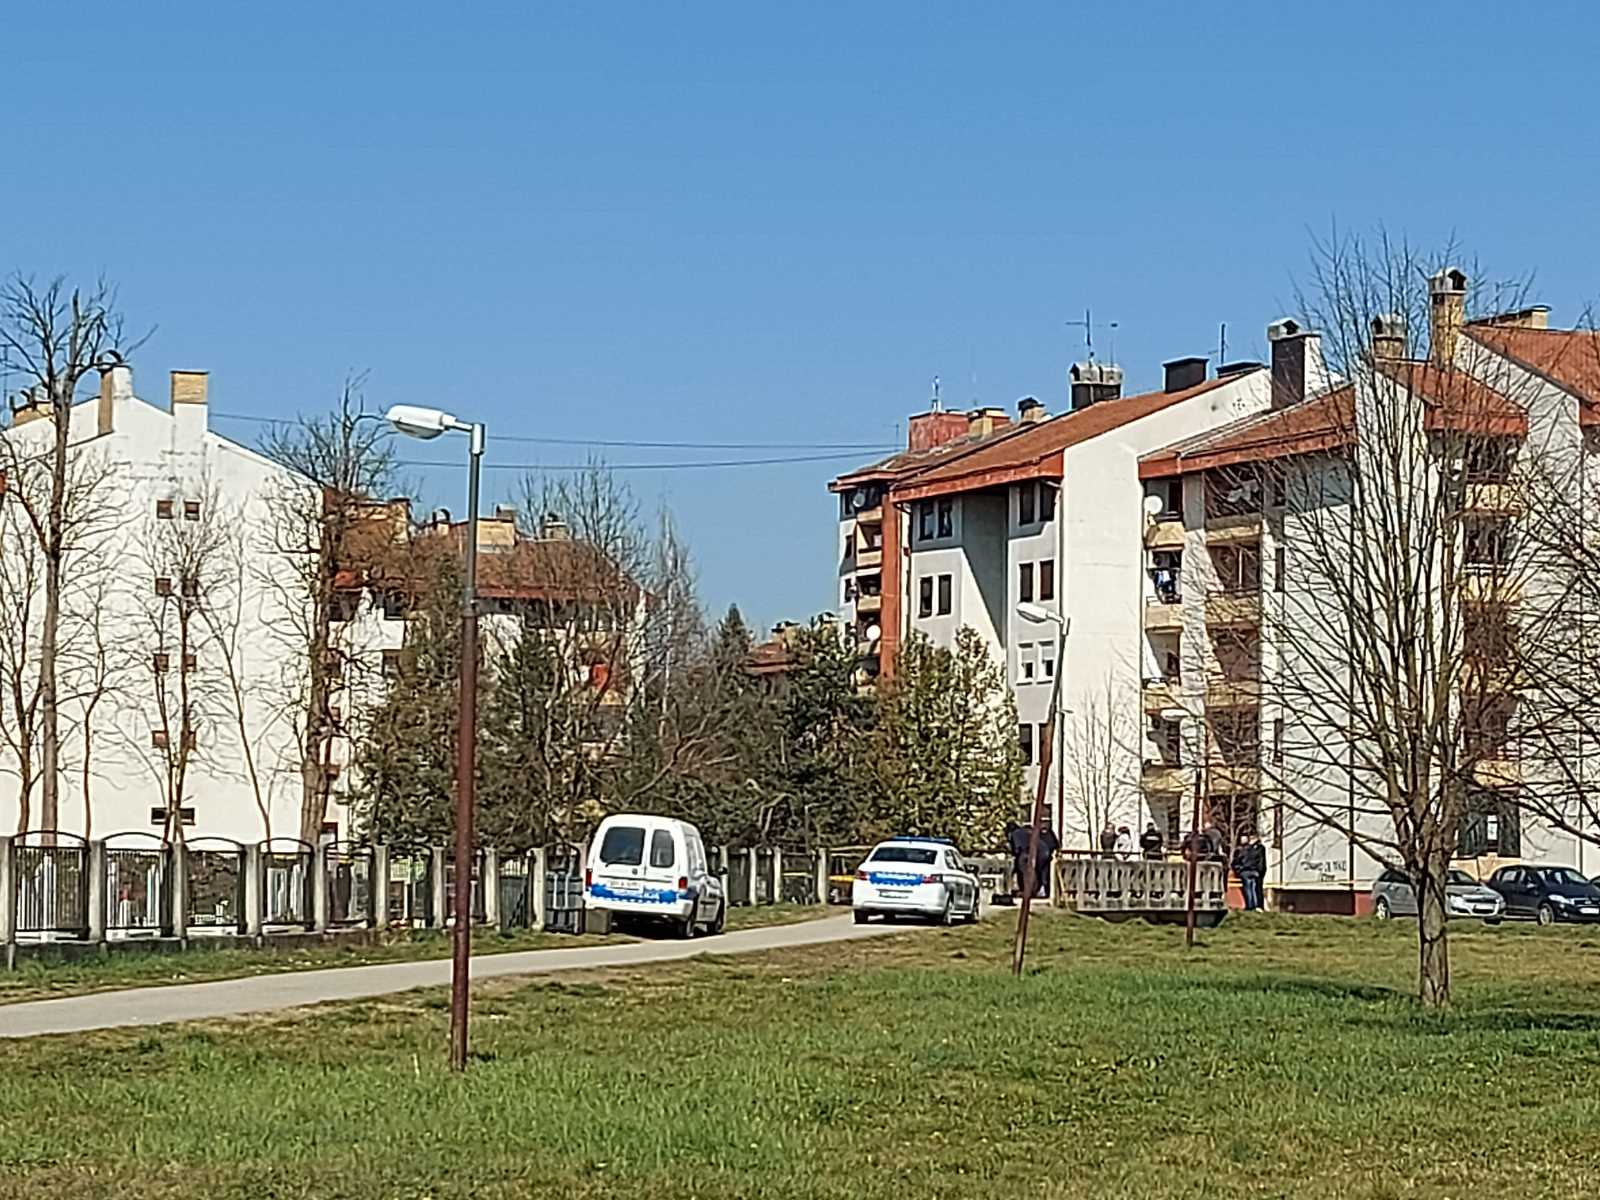  Pećani - mjesto gdje je ubijen Radenko Bašić 